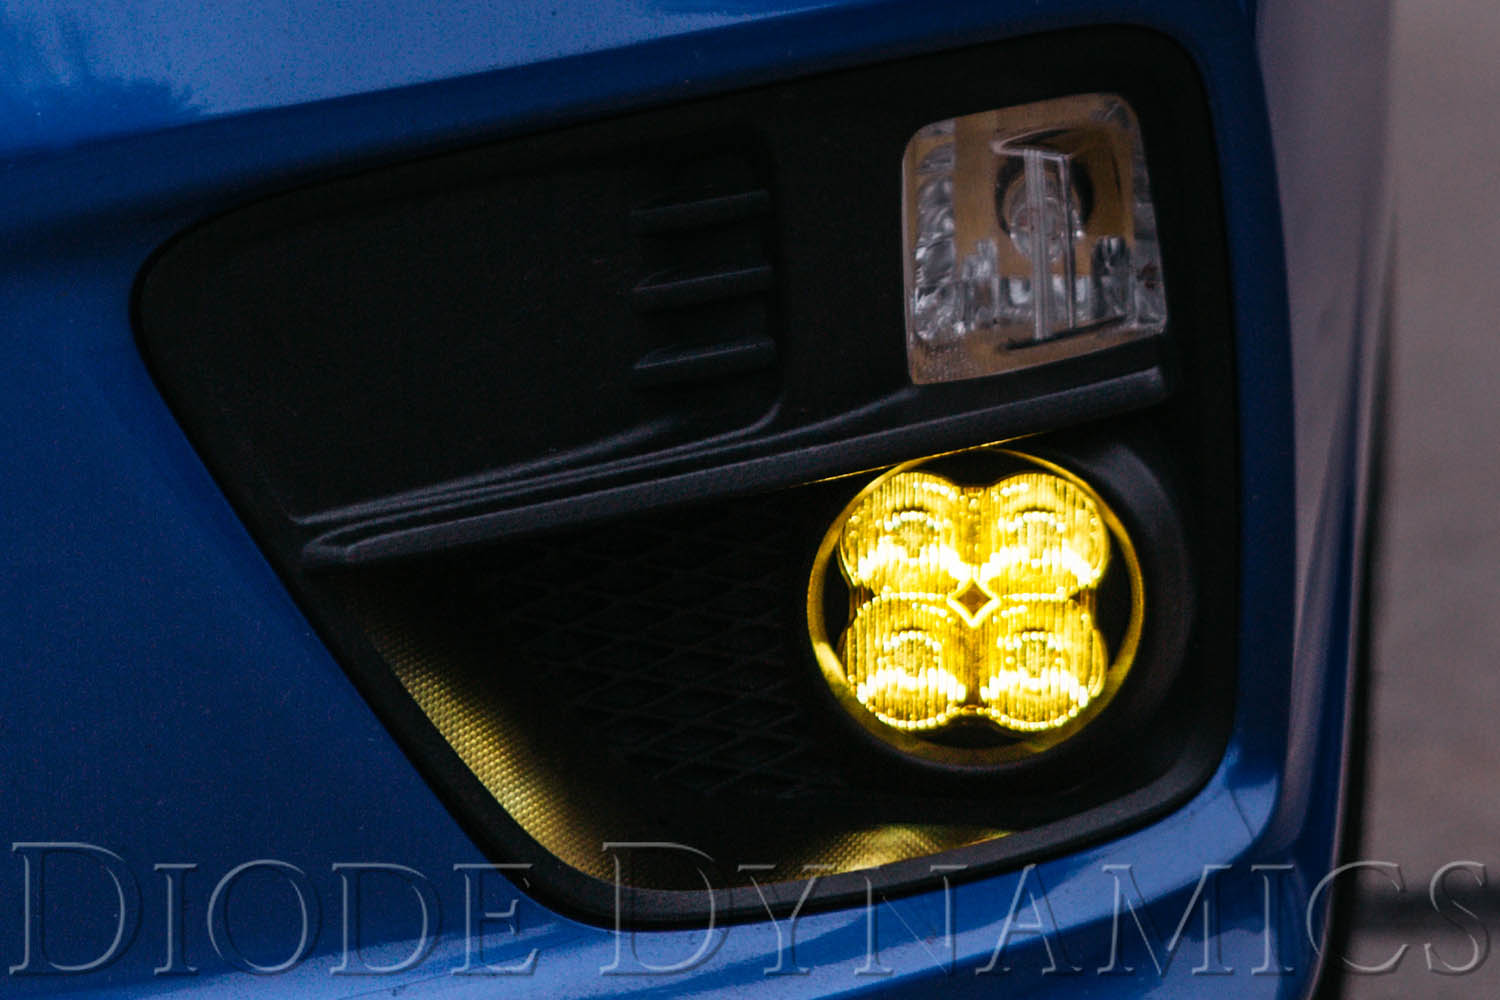 SS3 LED Fog Light Kit for 2012-2016 Fiat 500 Yellow SAE Fog Pro Diode Dynamics